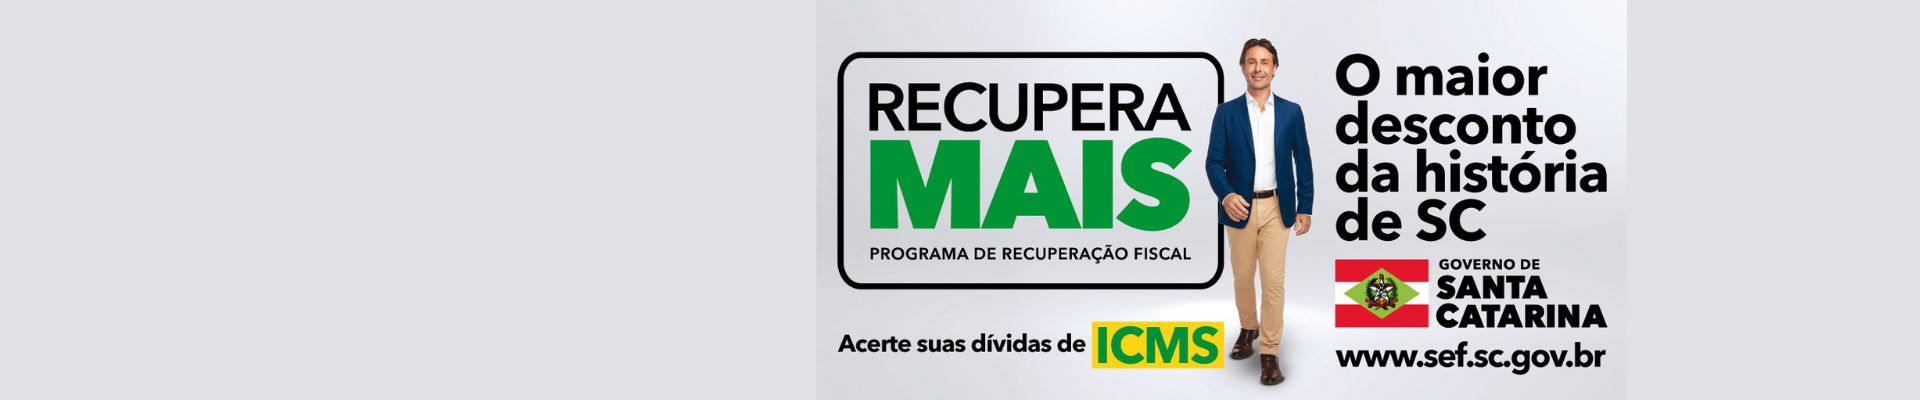 OneWG cria campanha de recuperação fiscal para o Governo de Santa Catarina